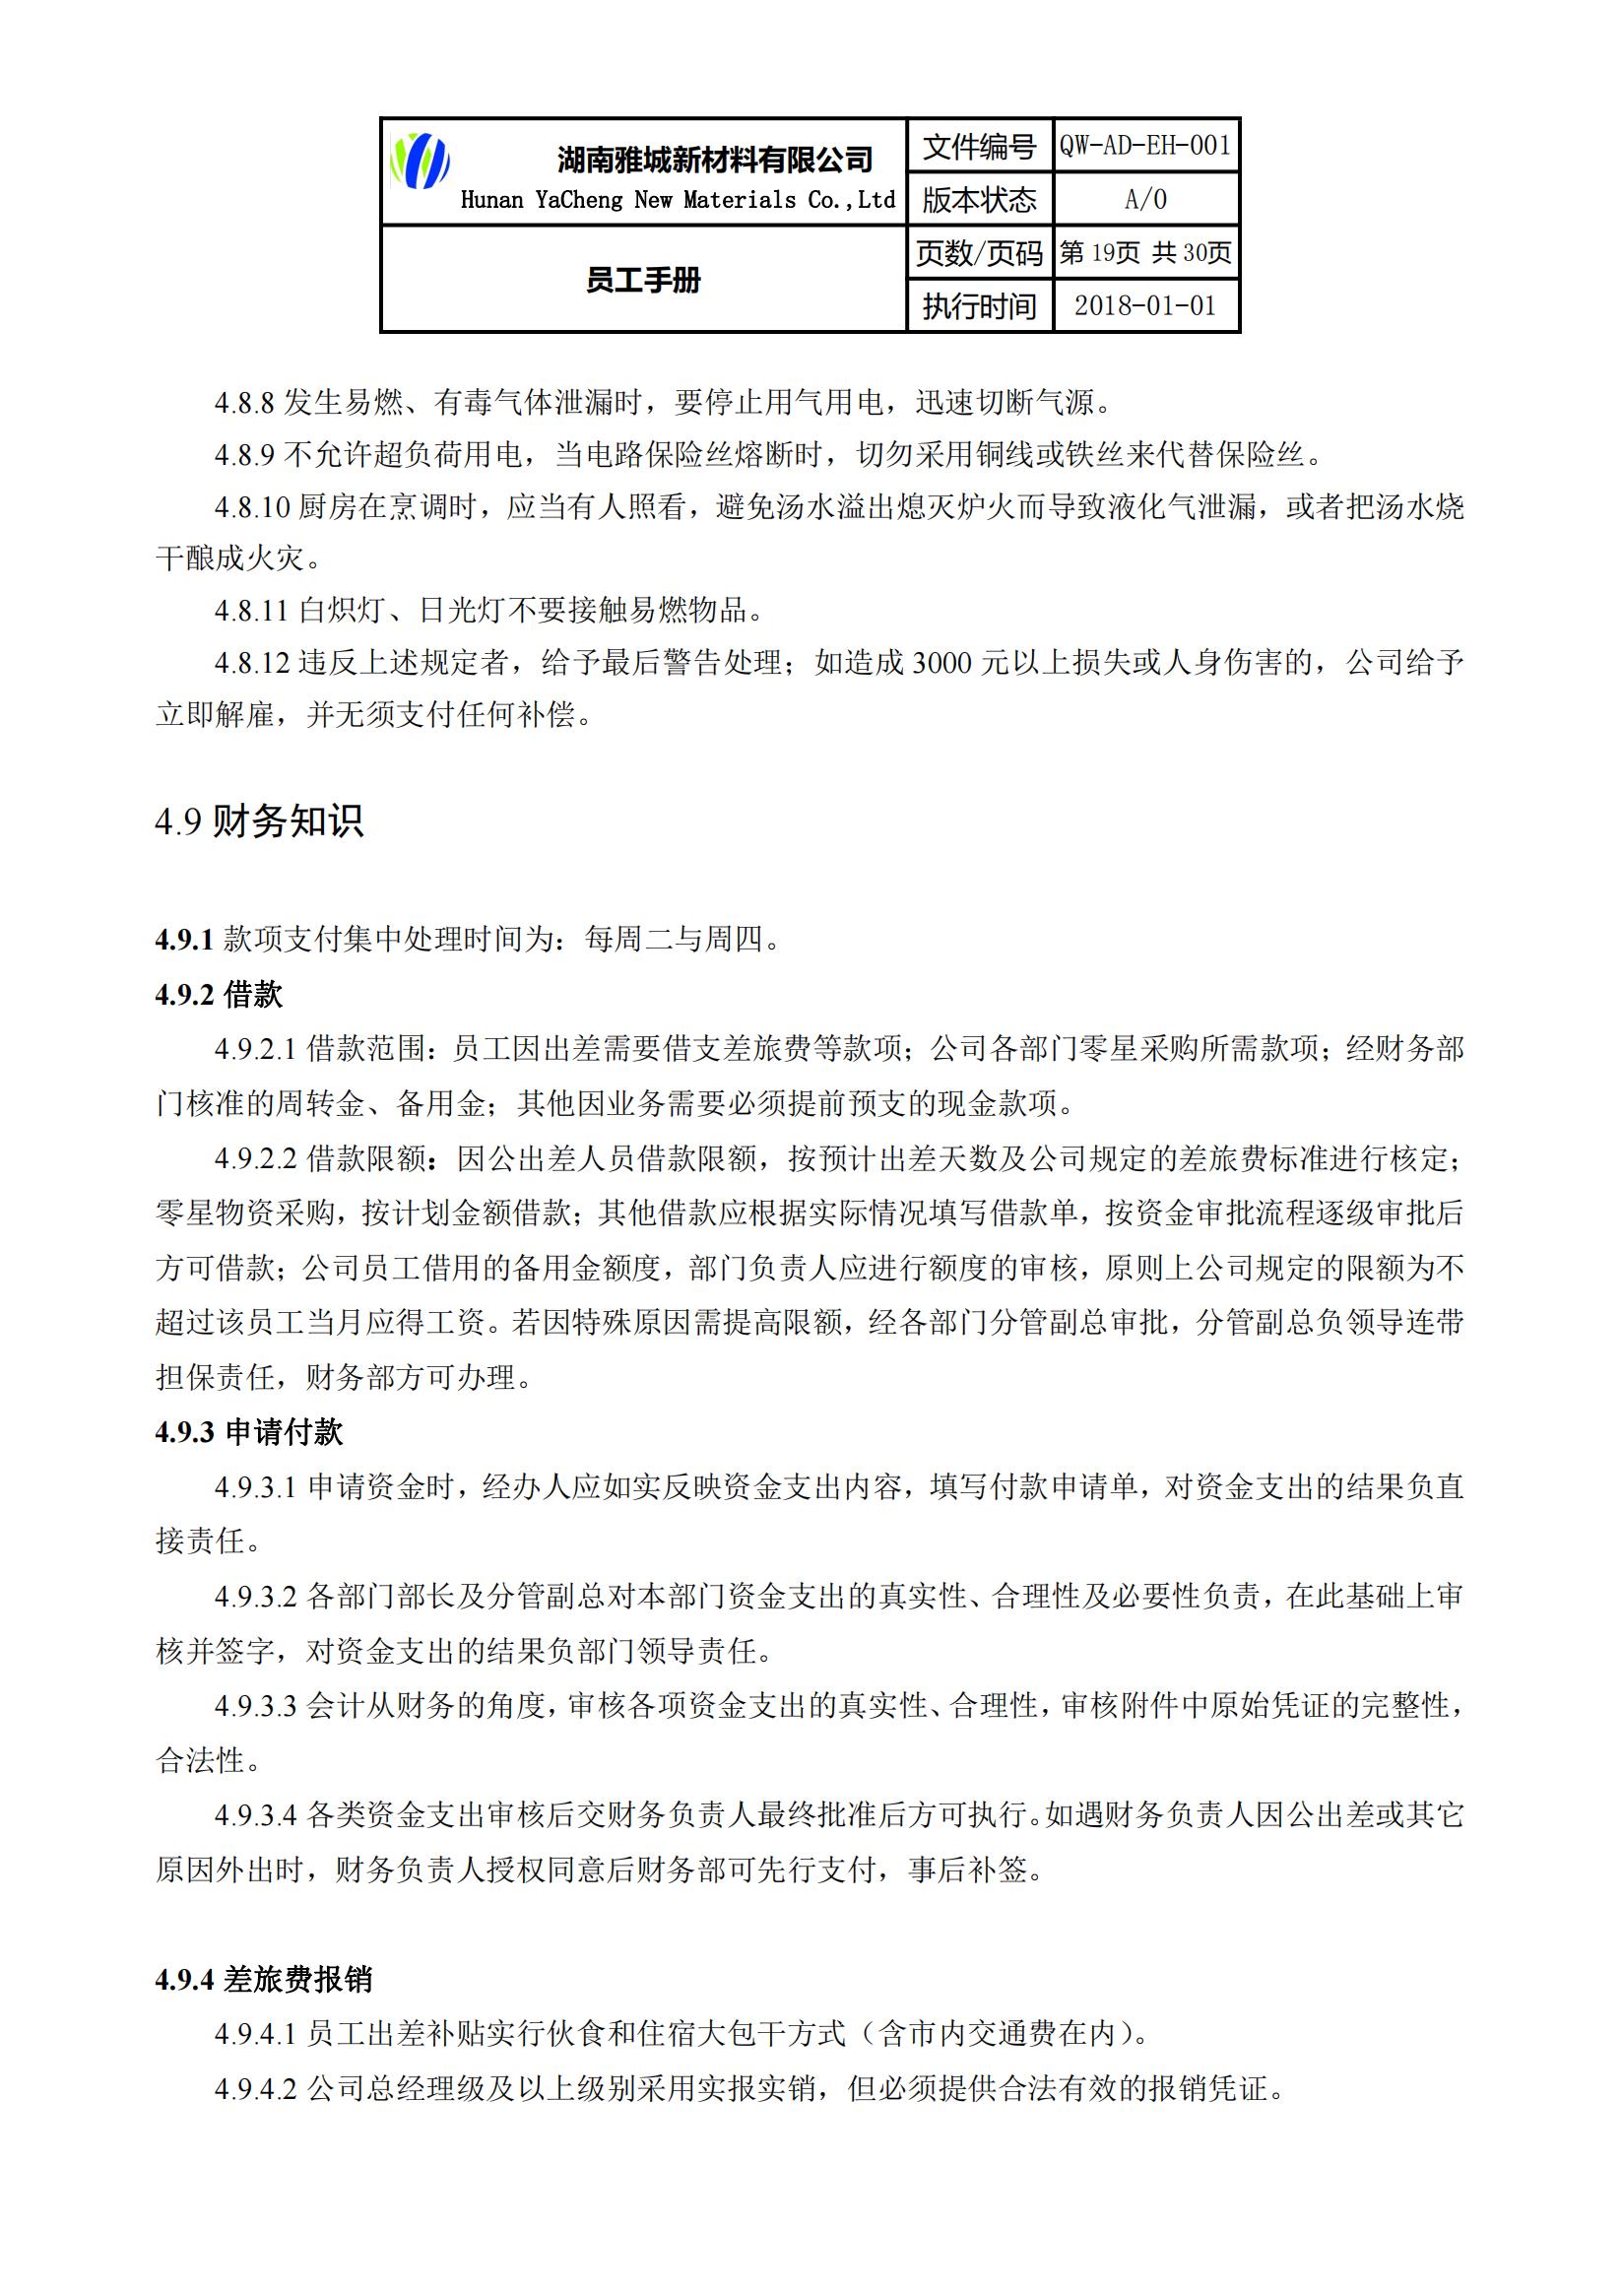 湖南雅城新材料有限公司《员工手册》公示